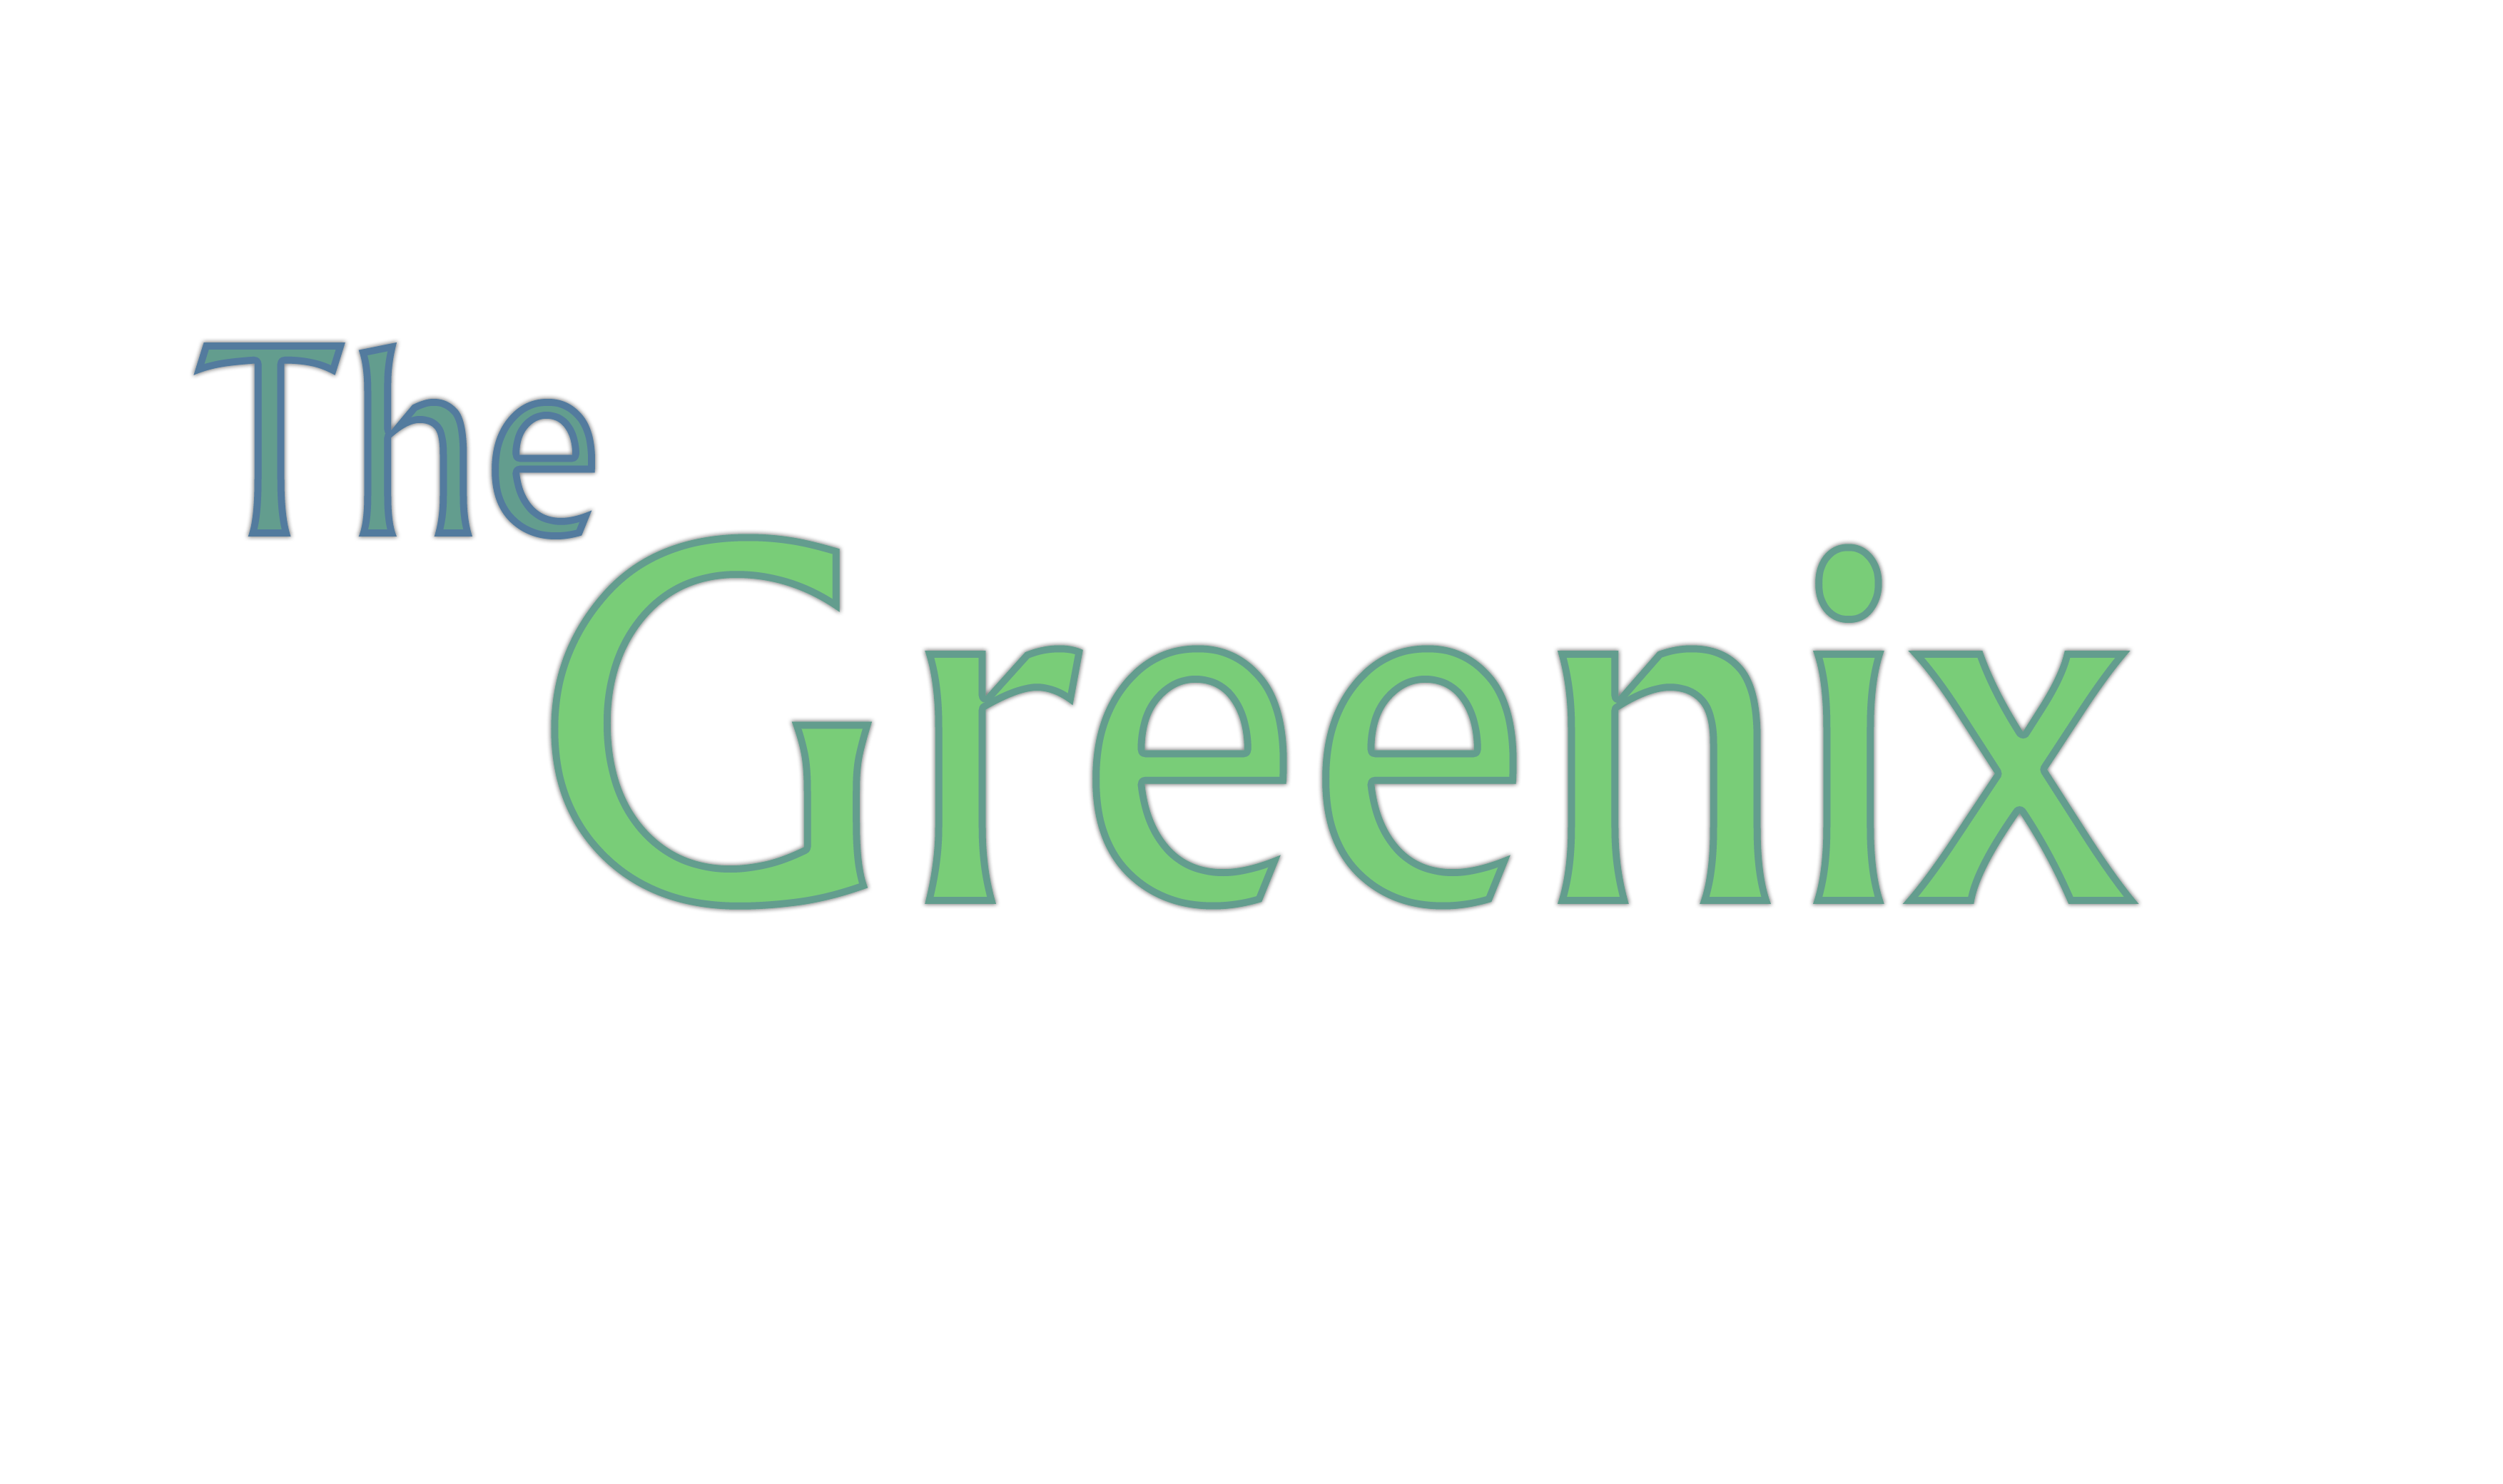 The Greenix